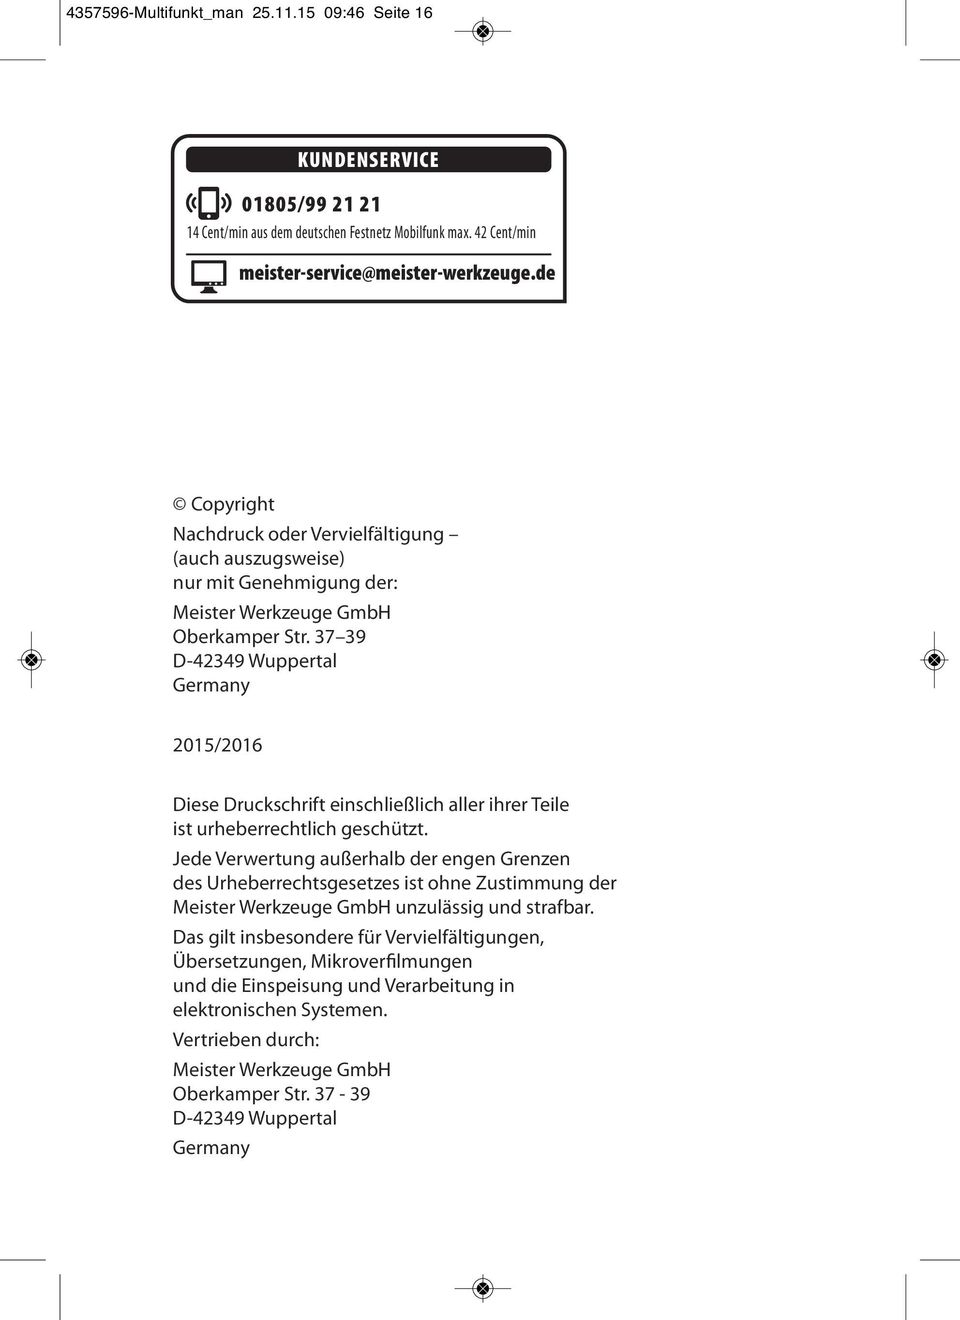 37 39 D-42349 Wuppertal Germany 2015/2016 Diese Druckschrift einschließlich aller ihrer Teile ist urheberrechtlich geschützt.